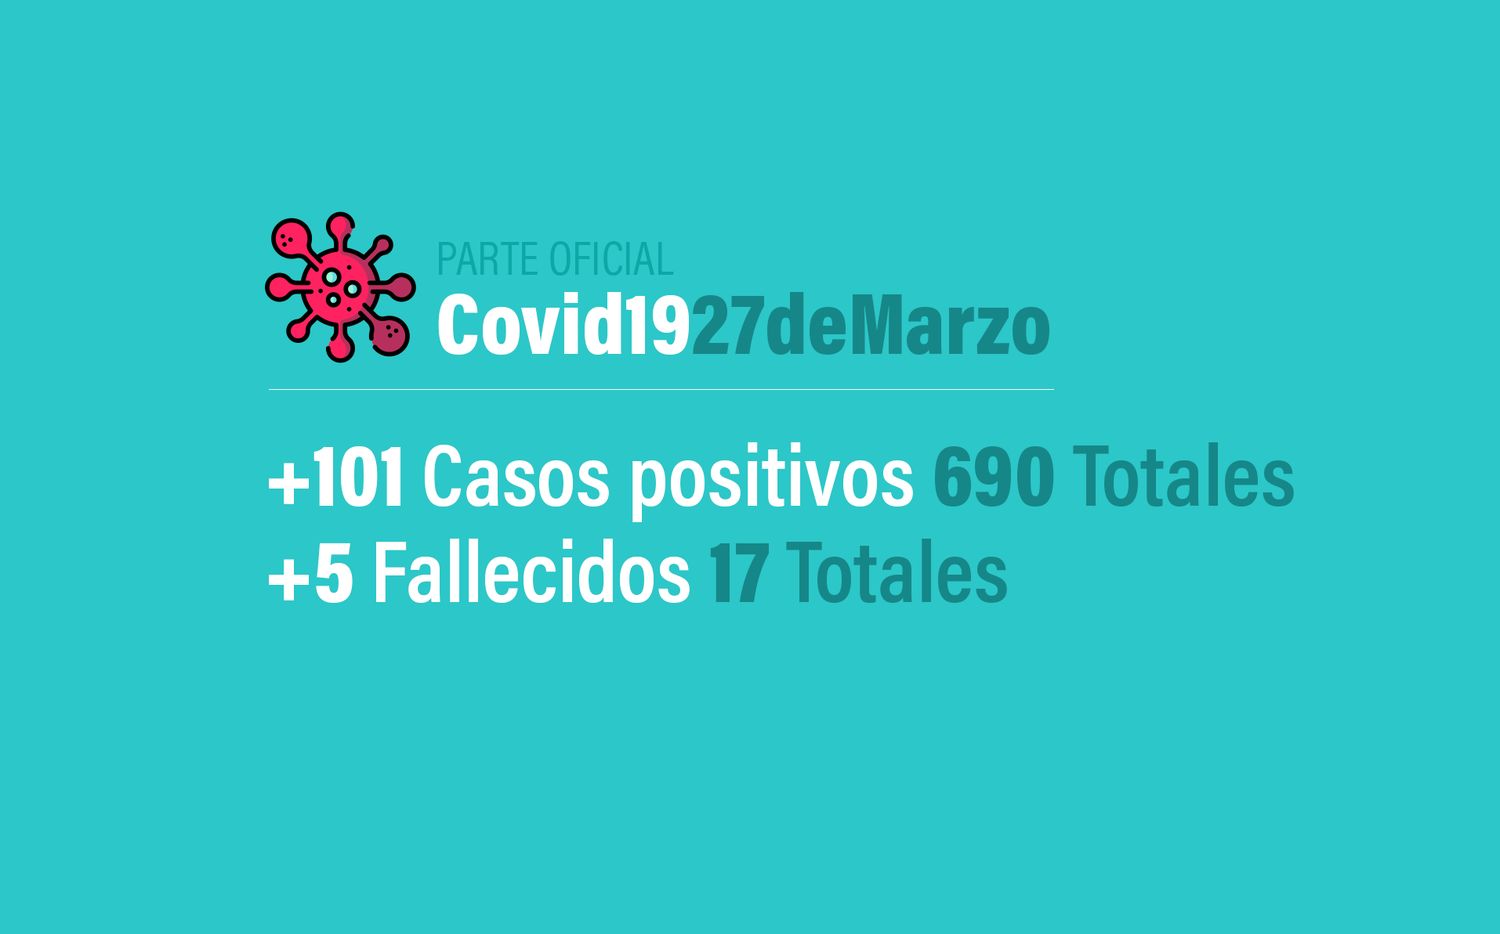 Coronavirus: 101 nuevos casos, trepa a 690 positivos en Argentina y 17 muertos al 27 de marzo